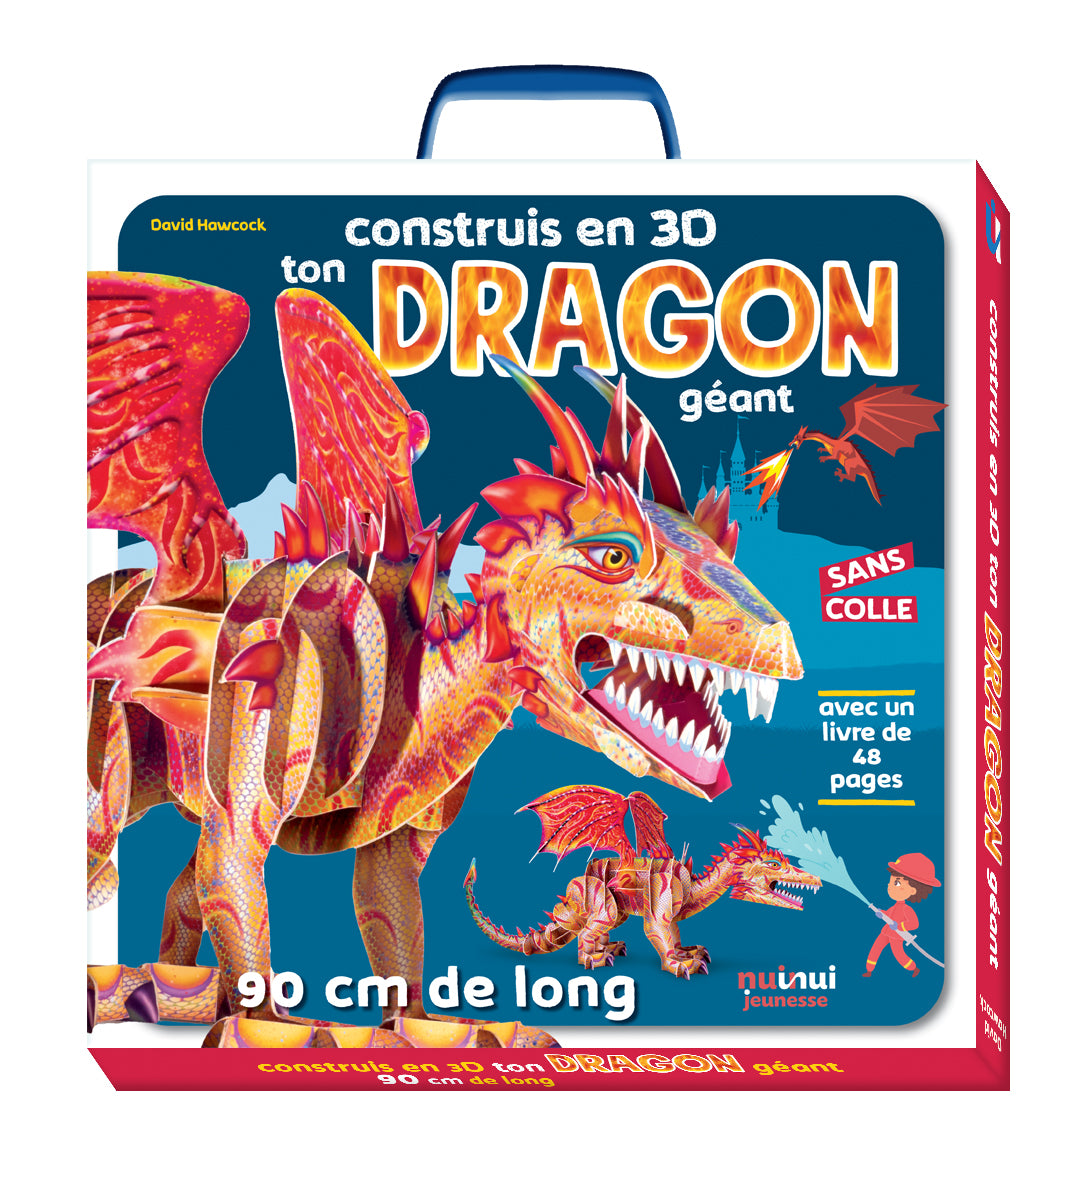 Construis en 3D - Ton dragon géant